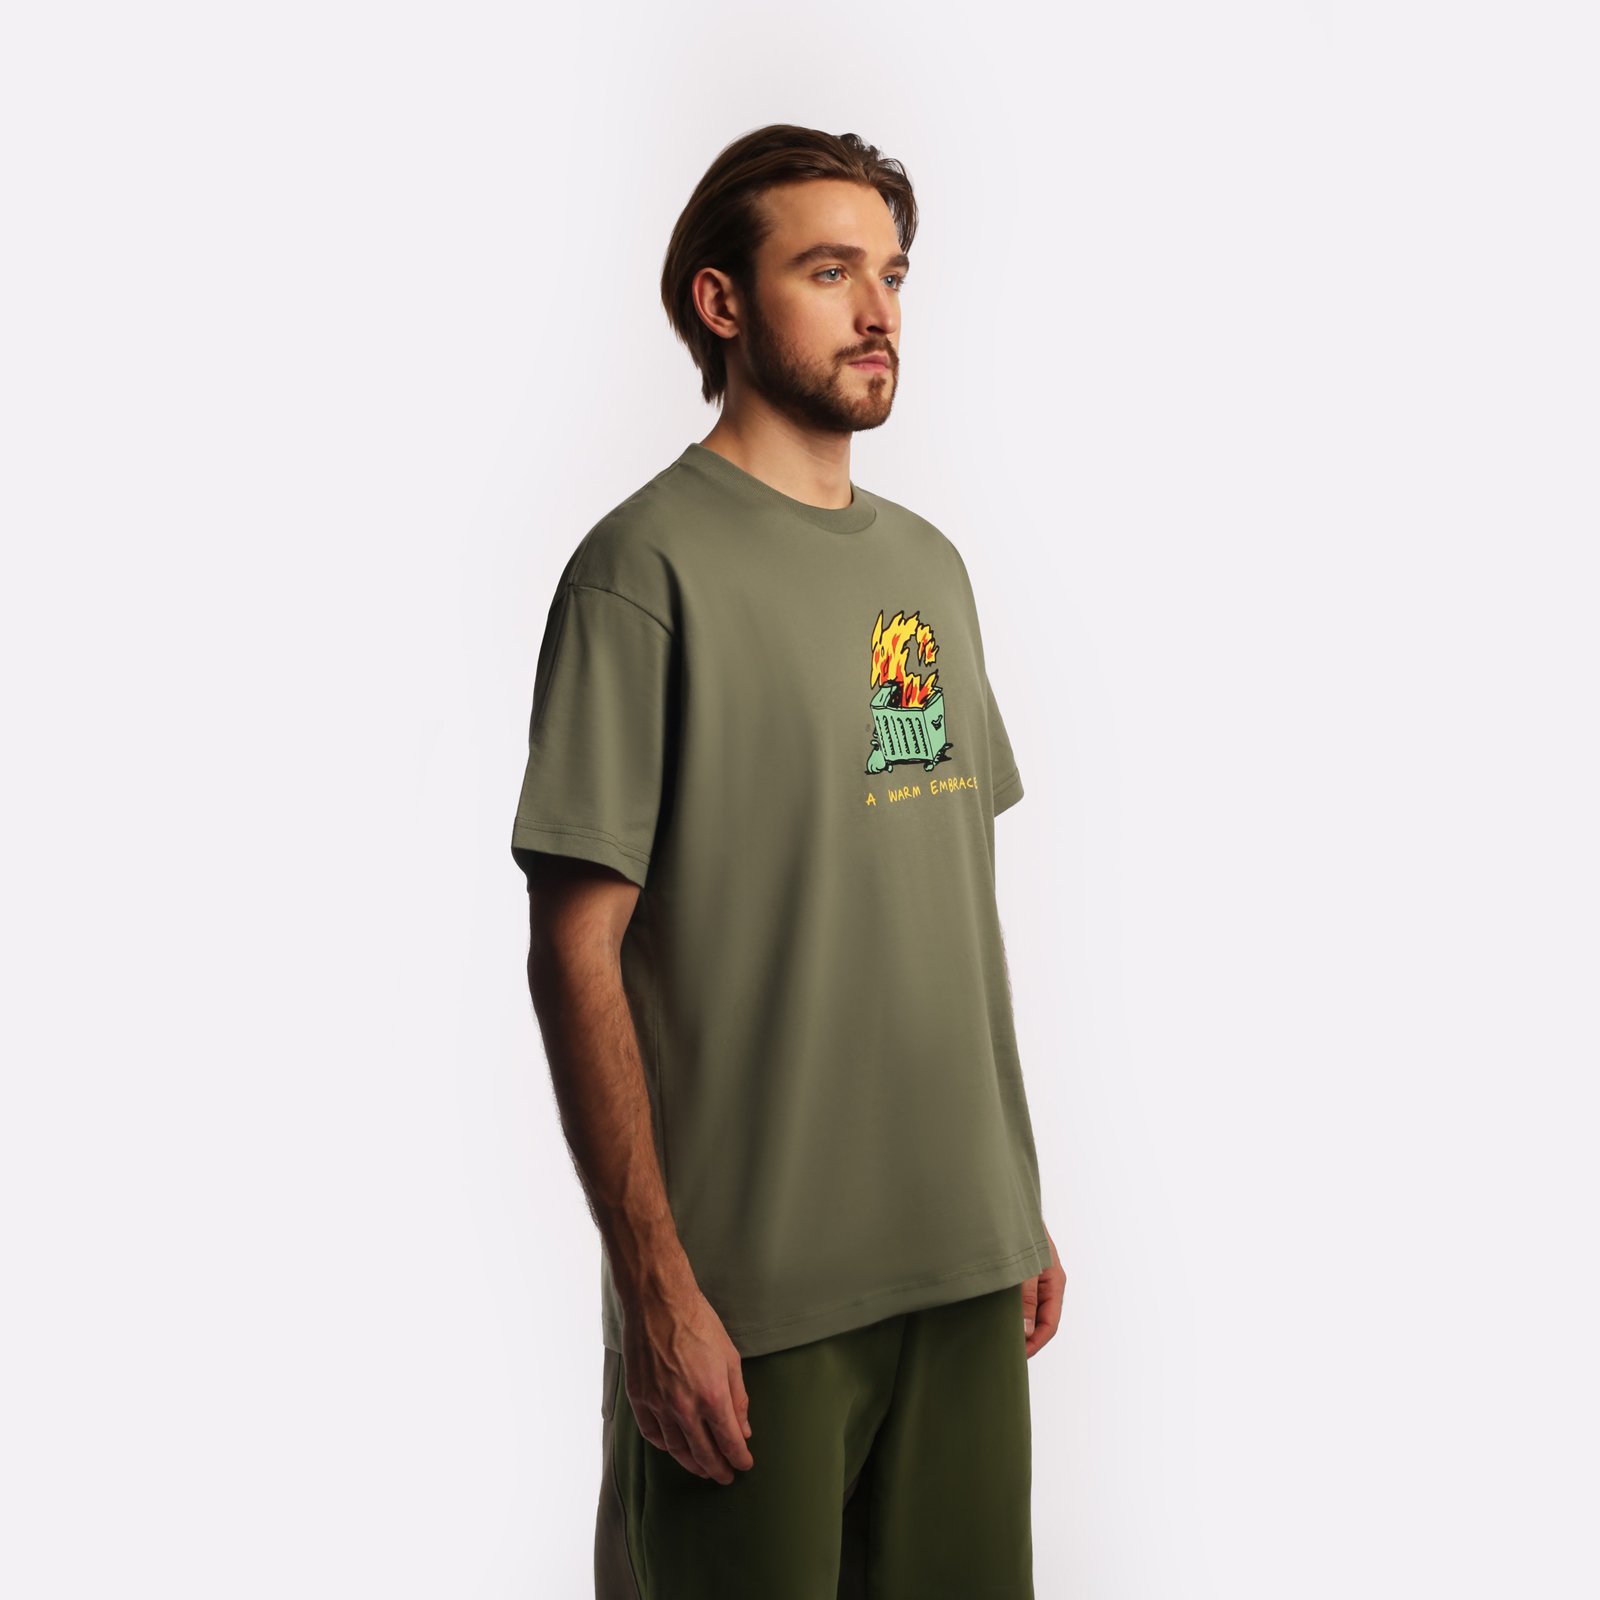 мужская футболка Carhartt WIP S/S Warm Embrace T-Shirt  (I032390-green) I032390-green - цена, описание, фото 3